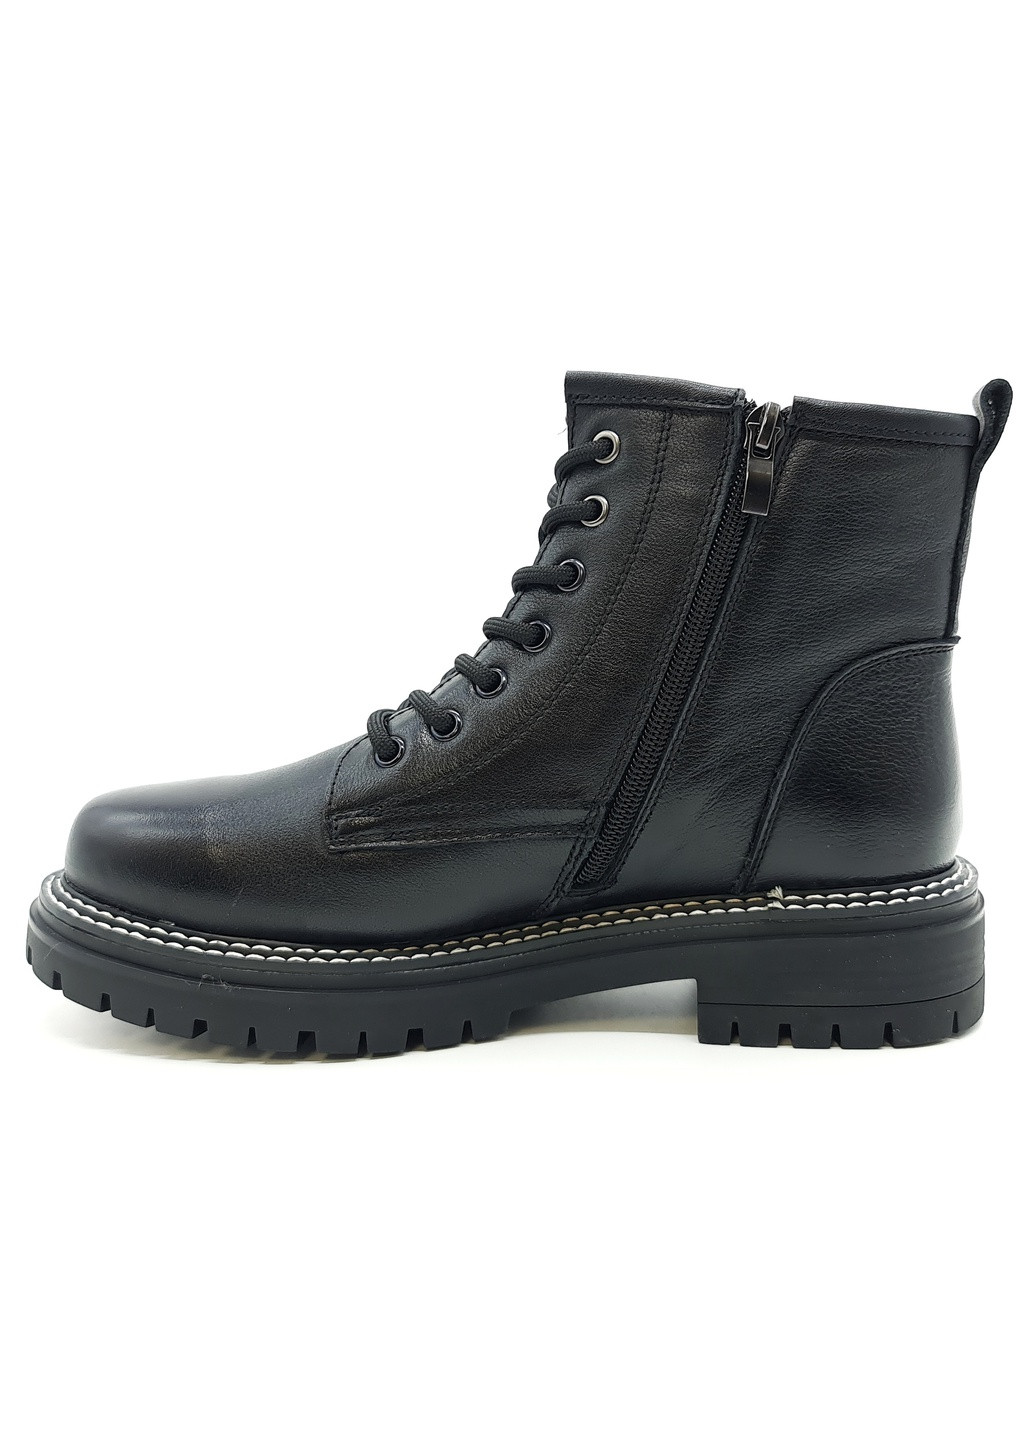 Осенние женские ботинки черные кожаные eg-19-2 24 см (р) Egga